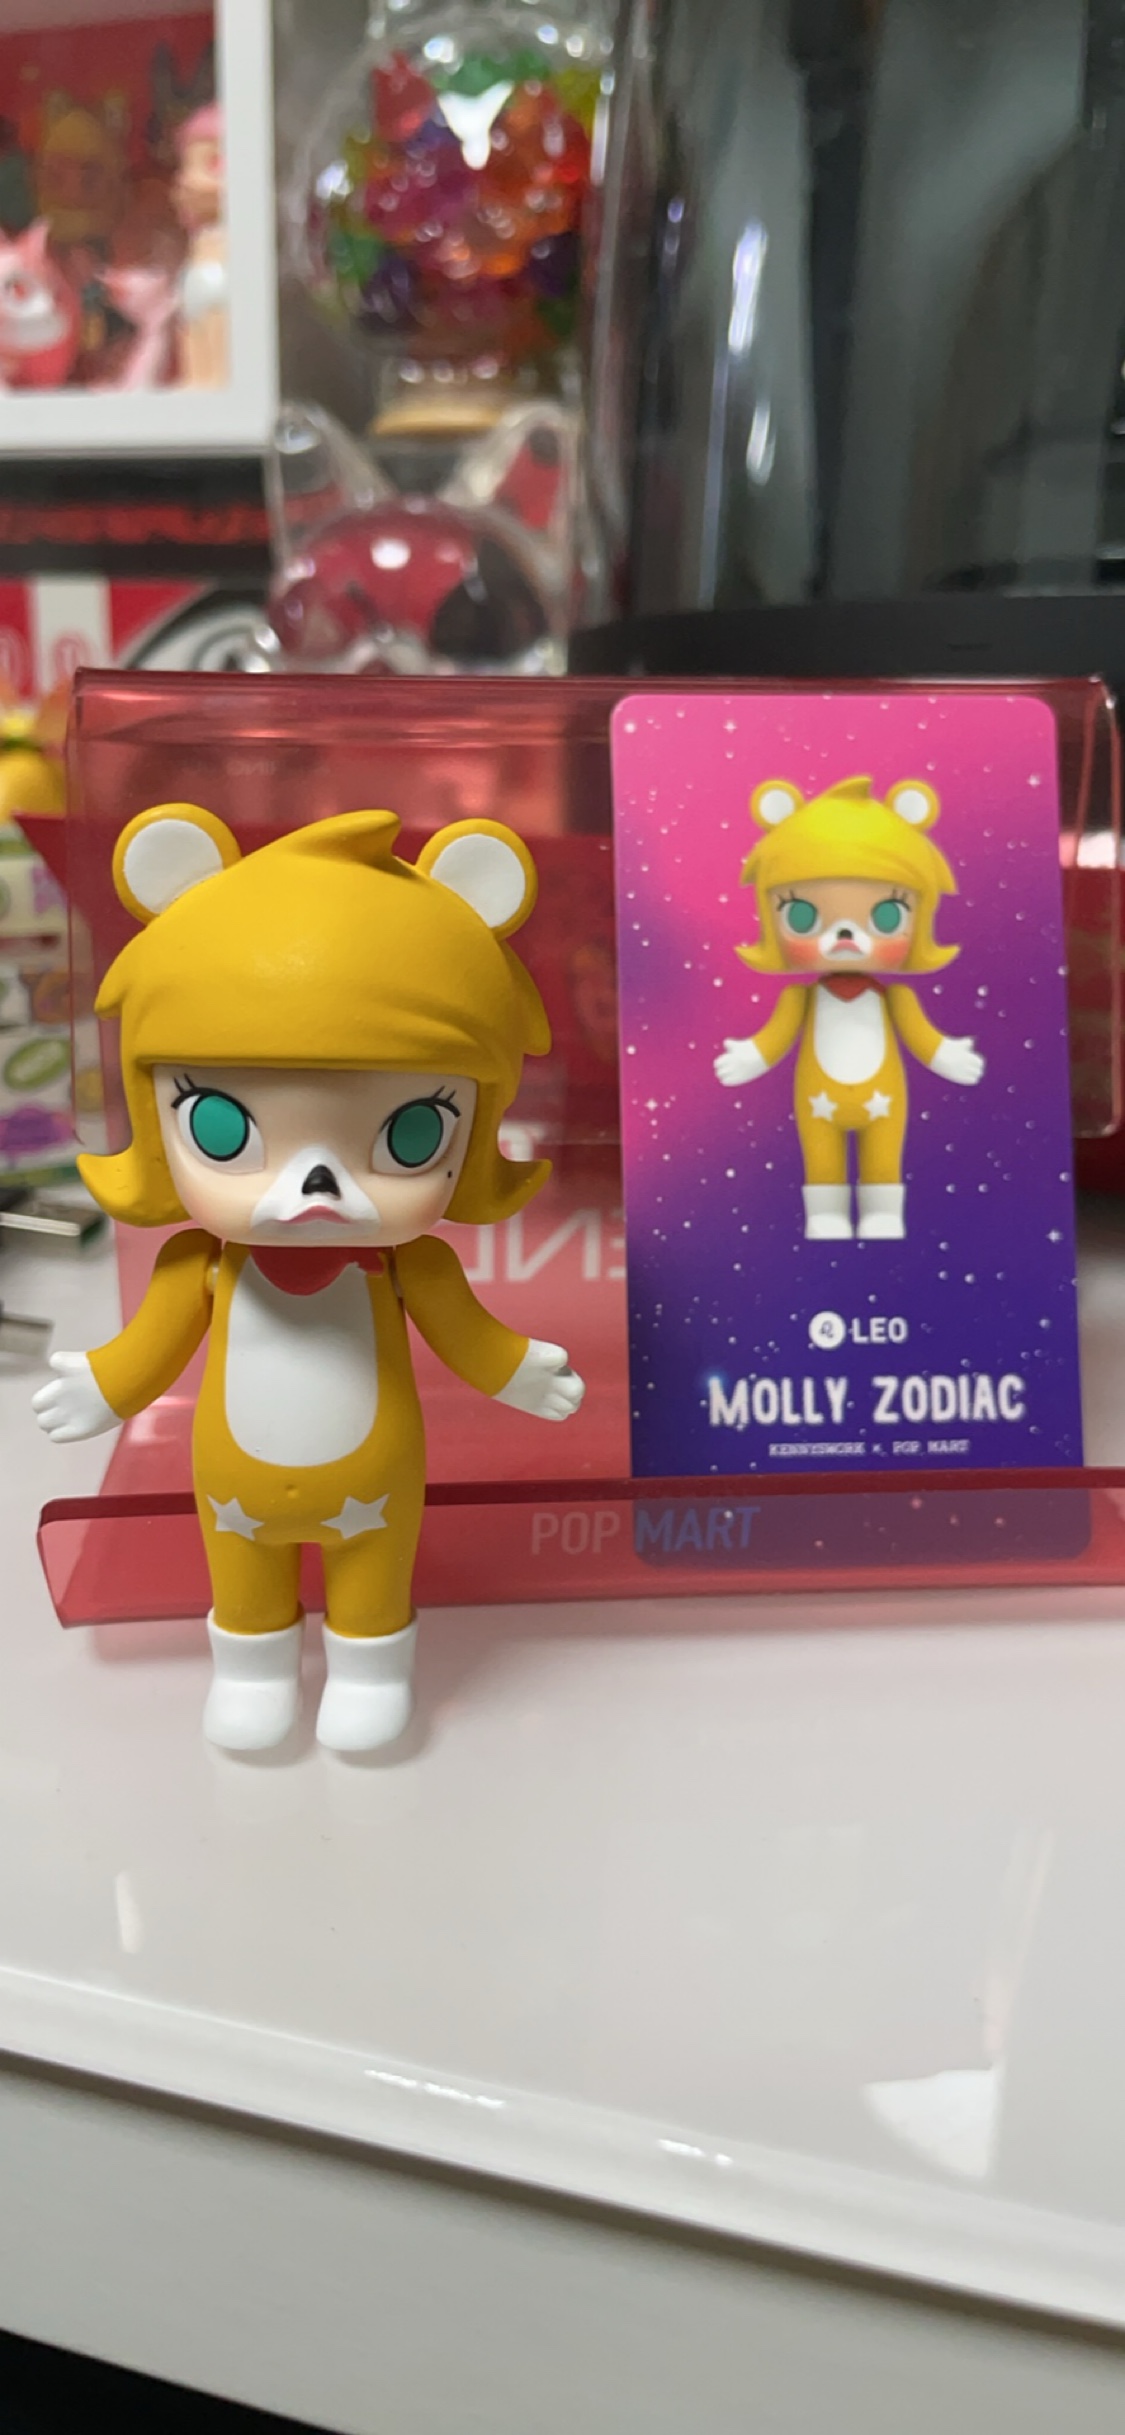 【Molly】星座一代系列之狮子座可爱桌面小摆件